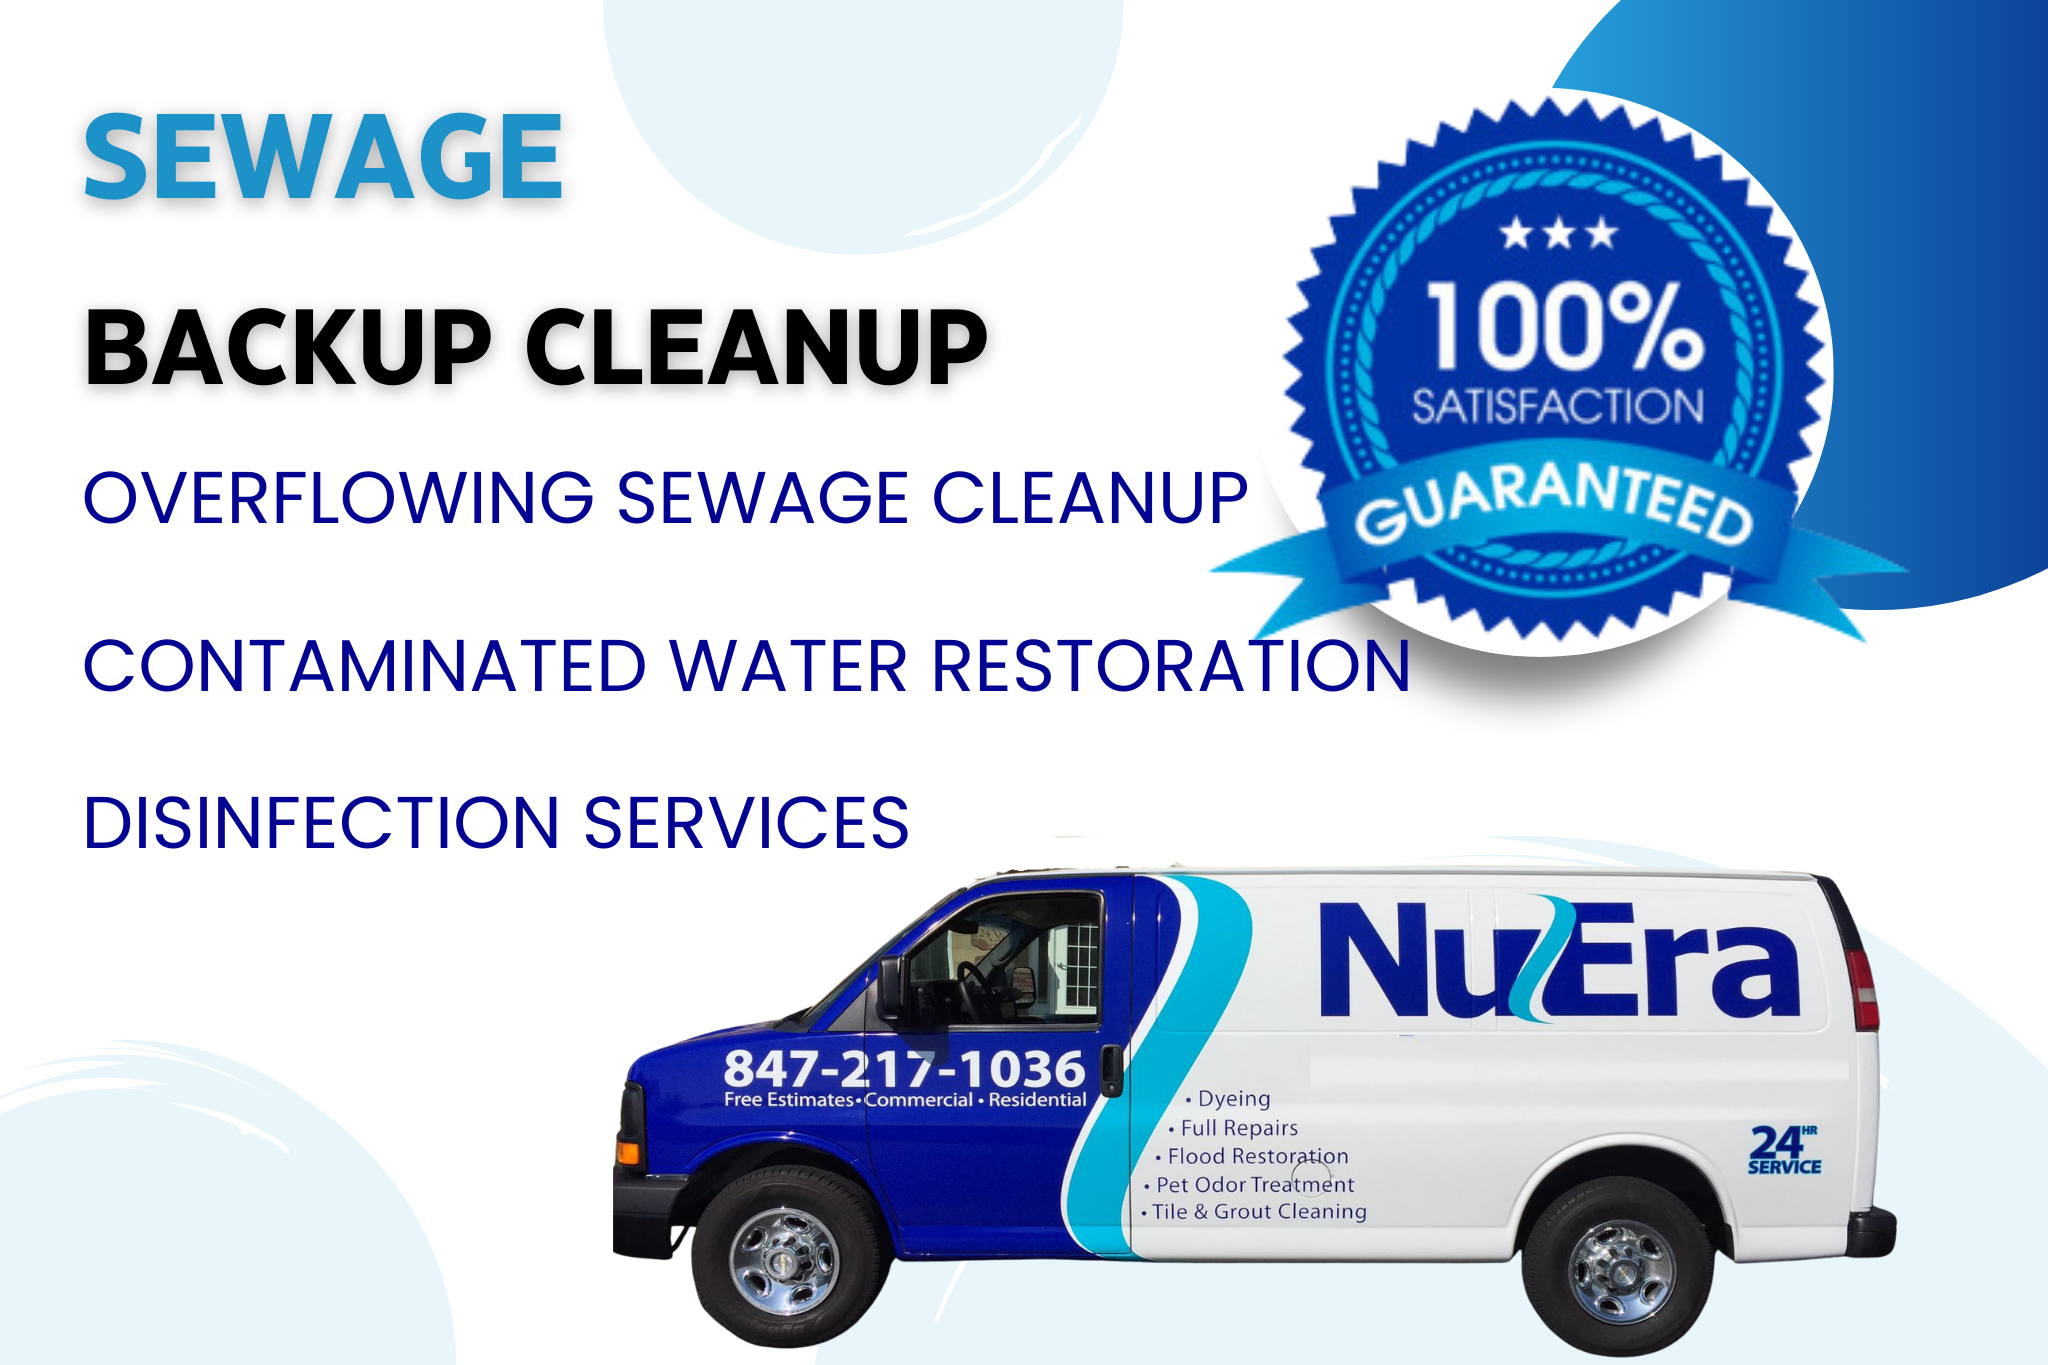 Sewage Backup Cleanup and Water Damage Restoration - NuEra Enterprises